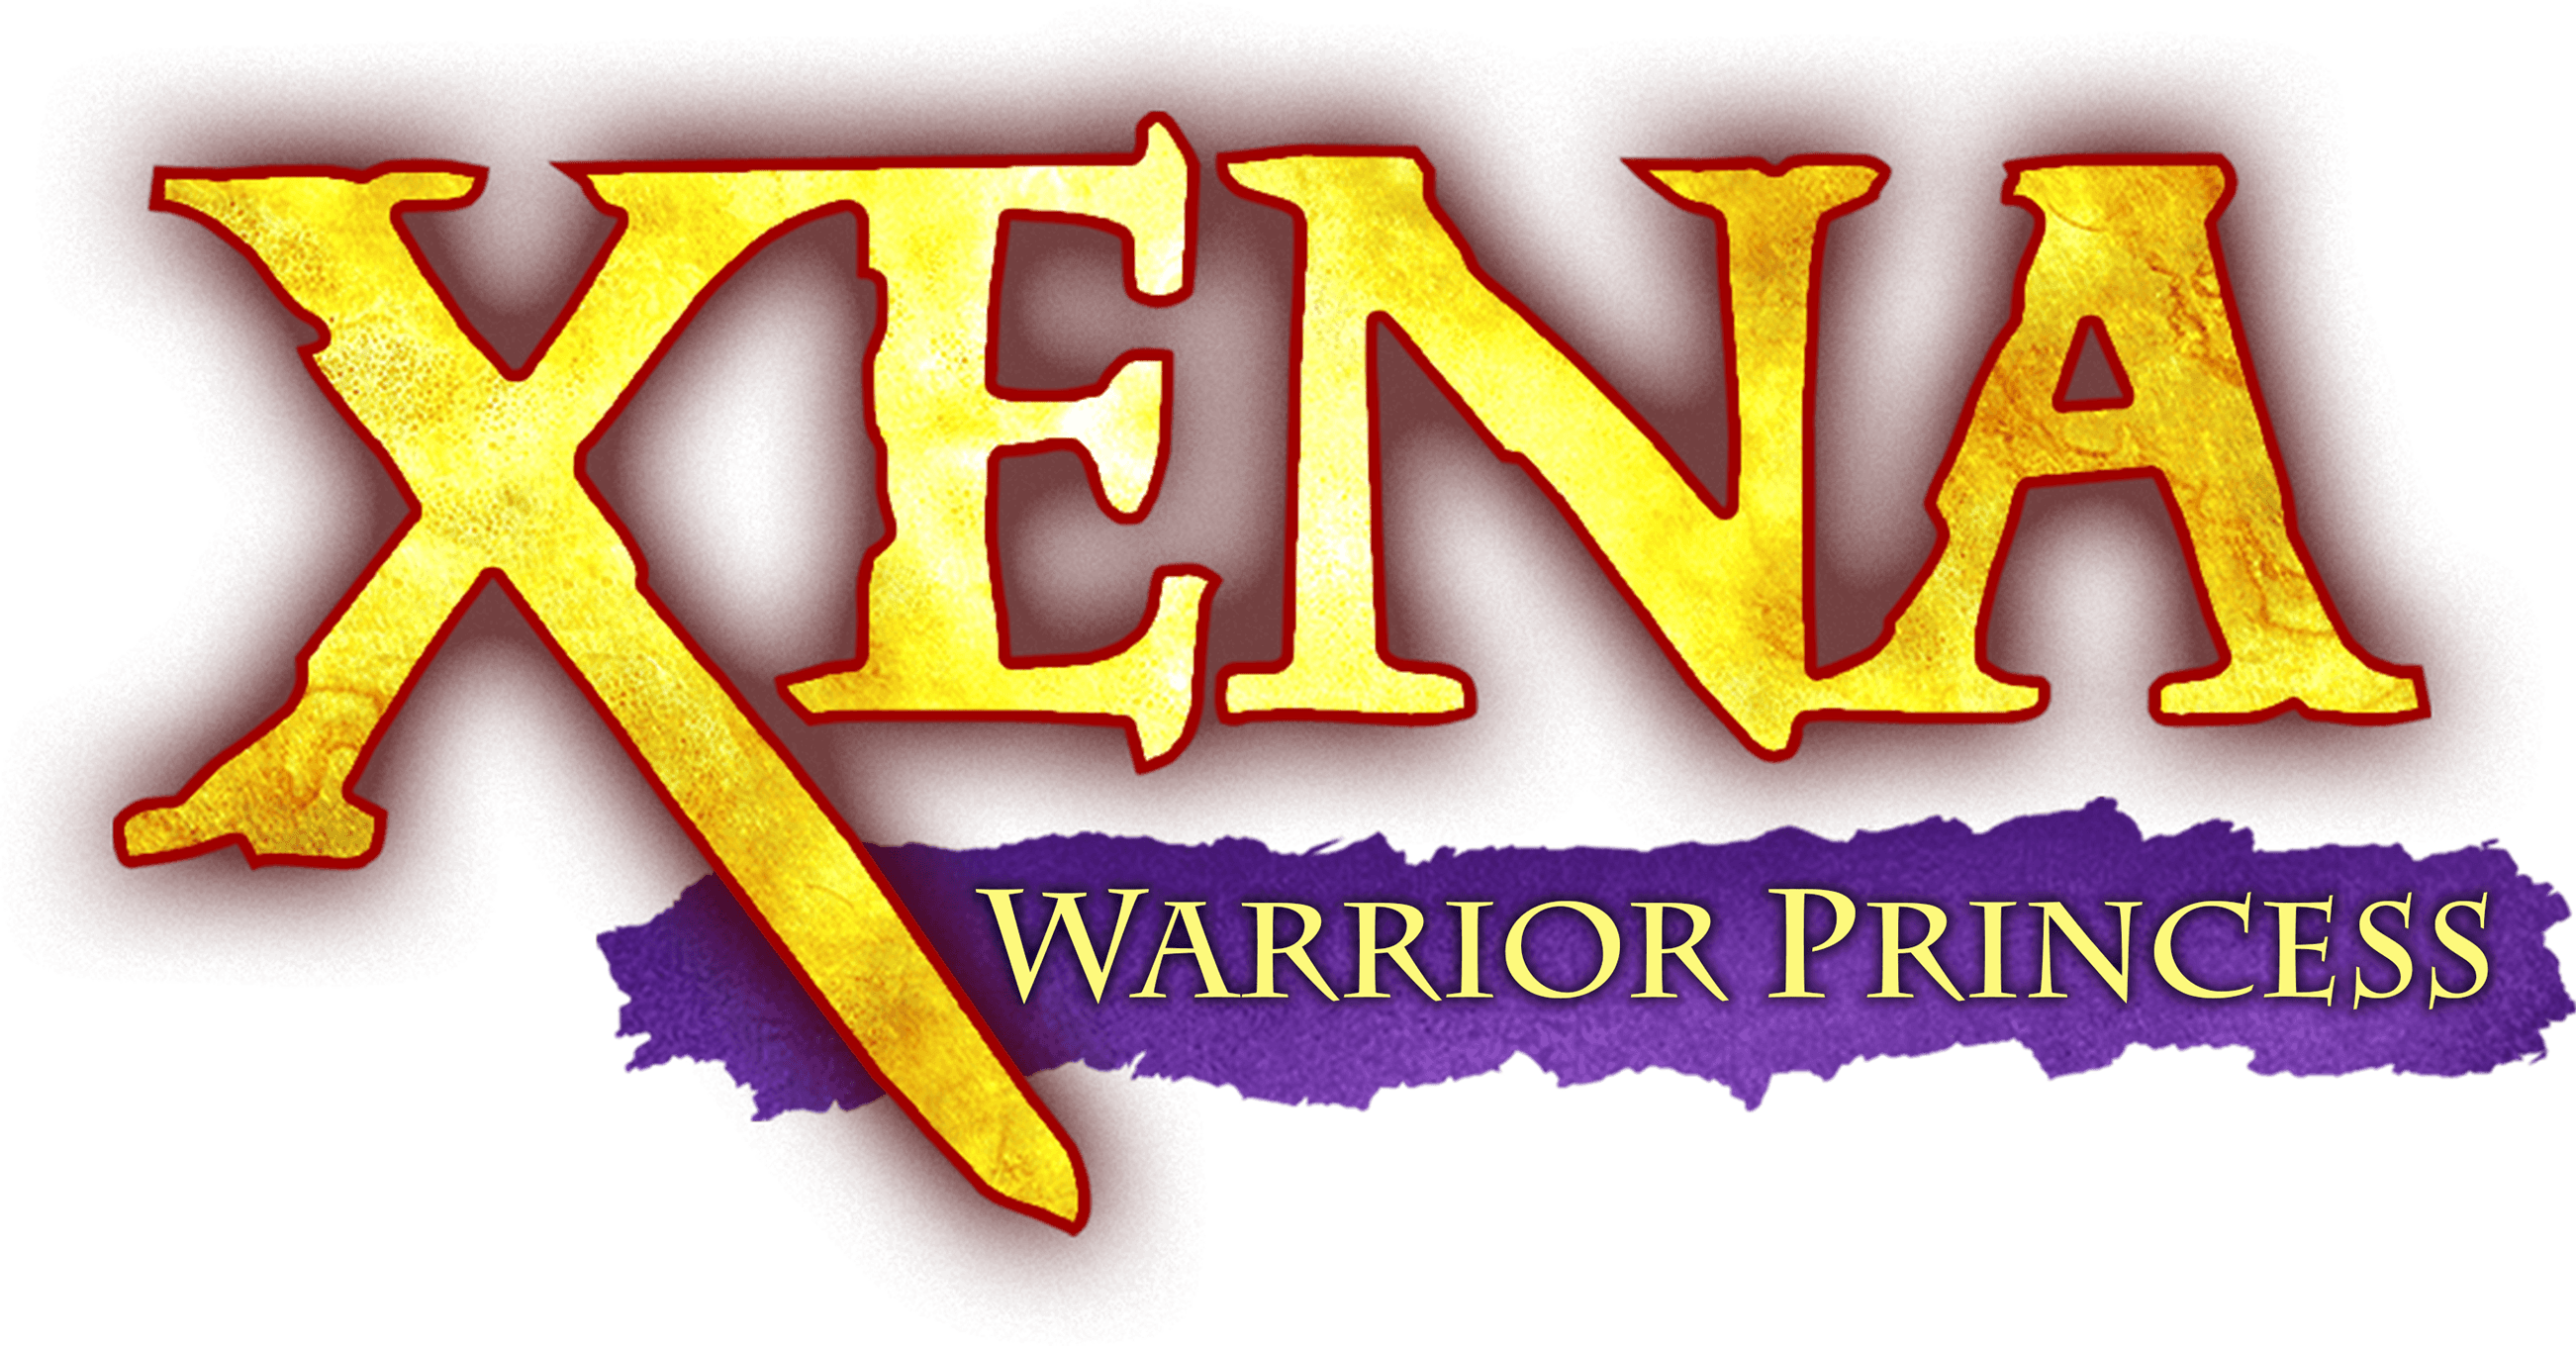 Xena: Warrior Princess logo